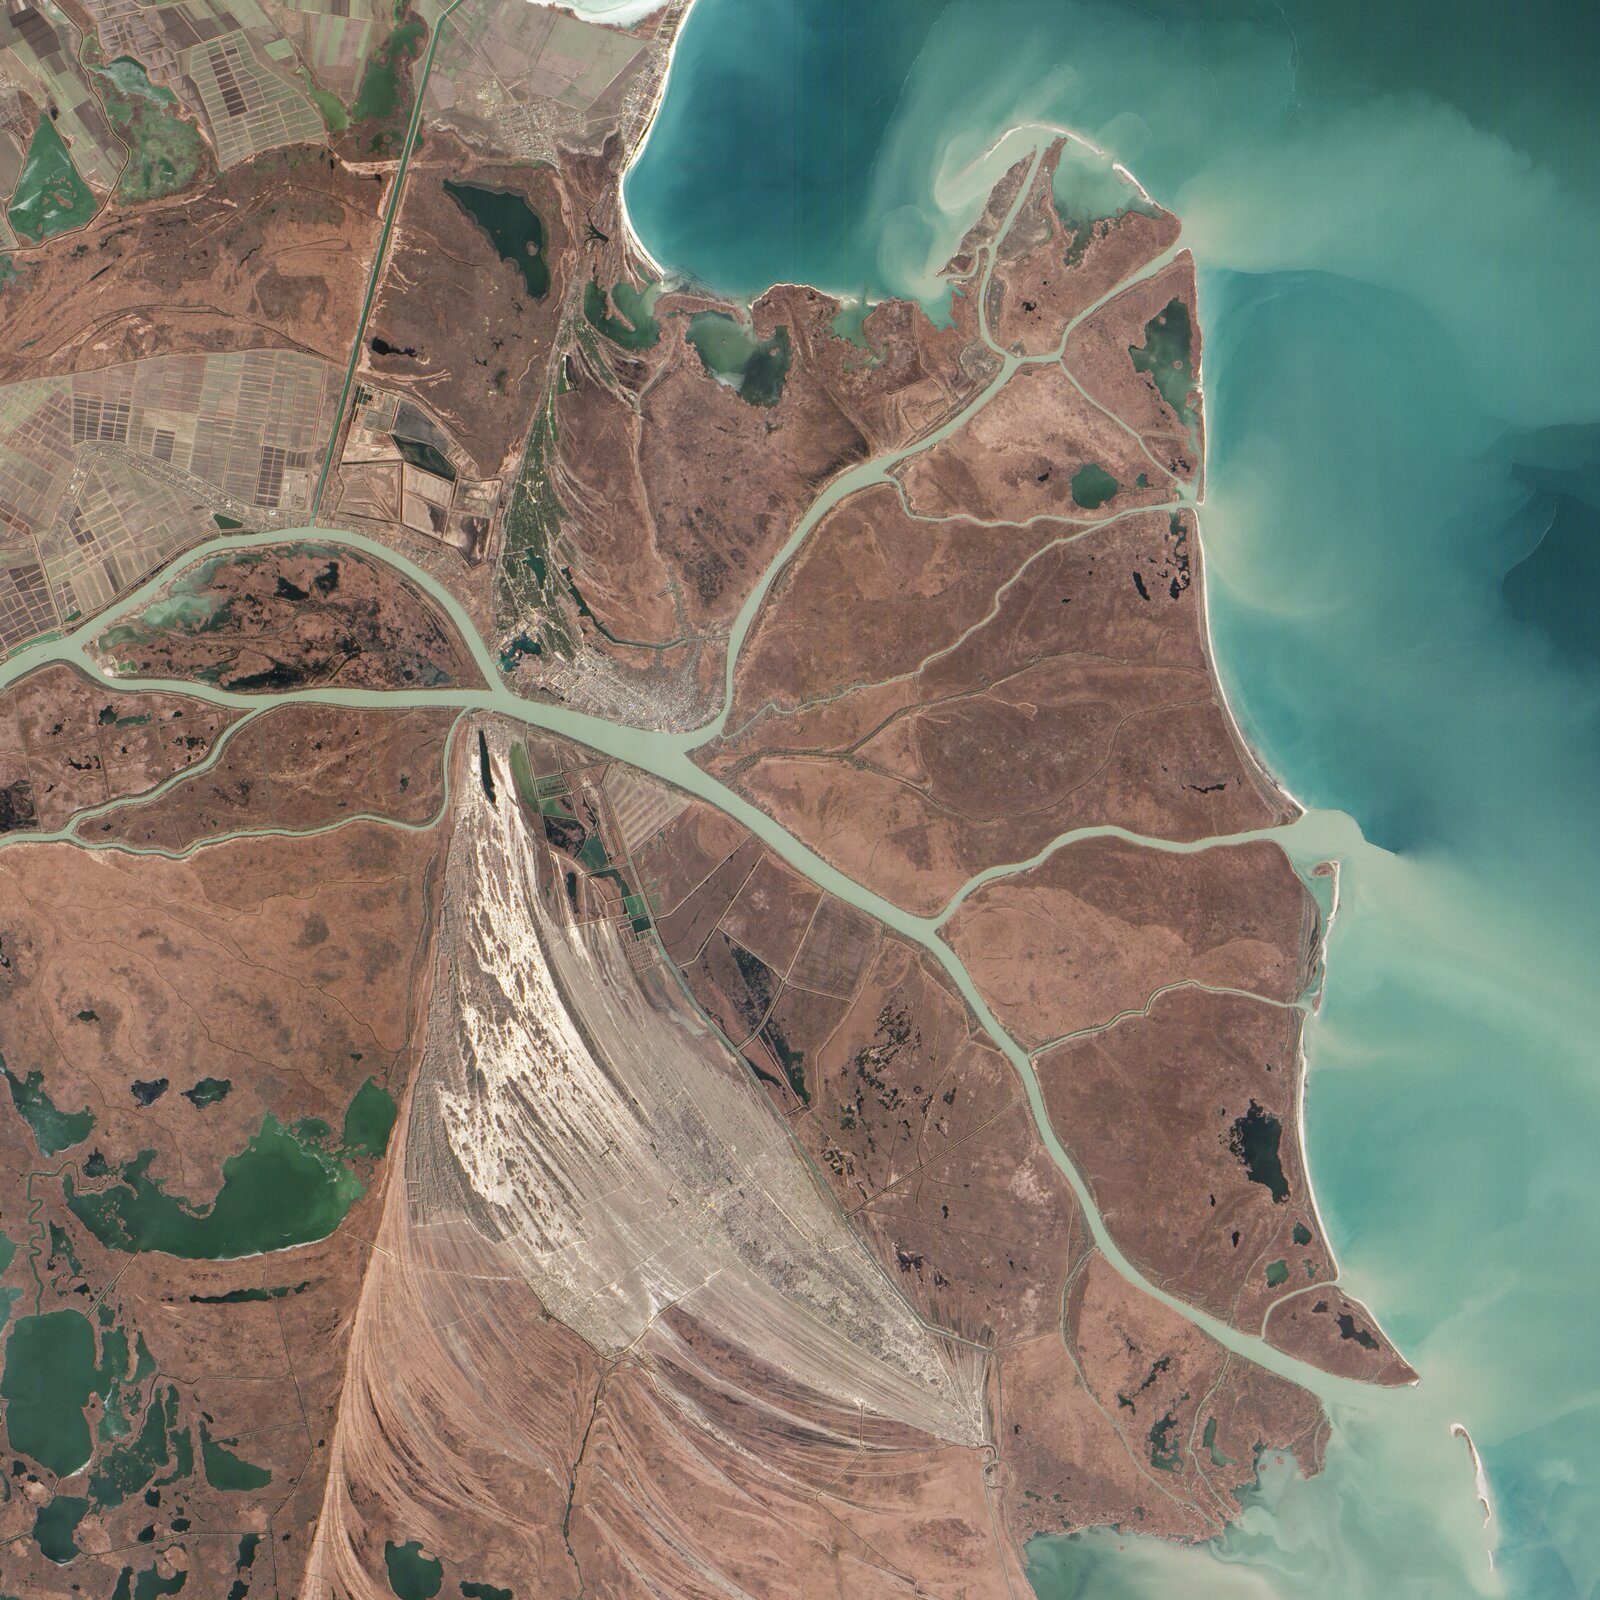 Na zdjęciu satelitarnym delta rzeki w postaci kilku odnóg, tworzących obszar o kształcie przypomi-nającym grecką literę Δ (delta). Tereny pomiędzy kolejnymi odnogami pozbawione roślinności. Z prawej strony turkusowe morze, jasne smugi materiału niesionego przez rzekę.